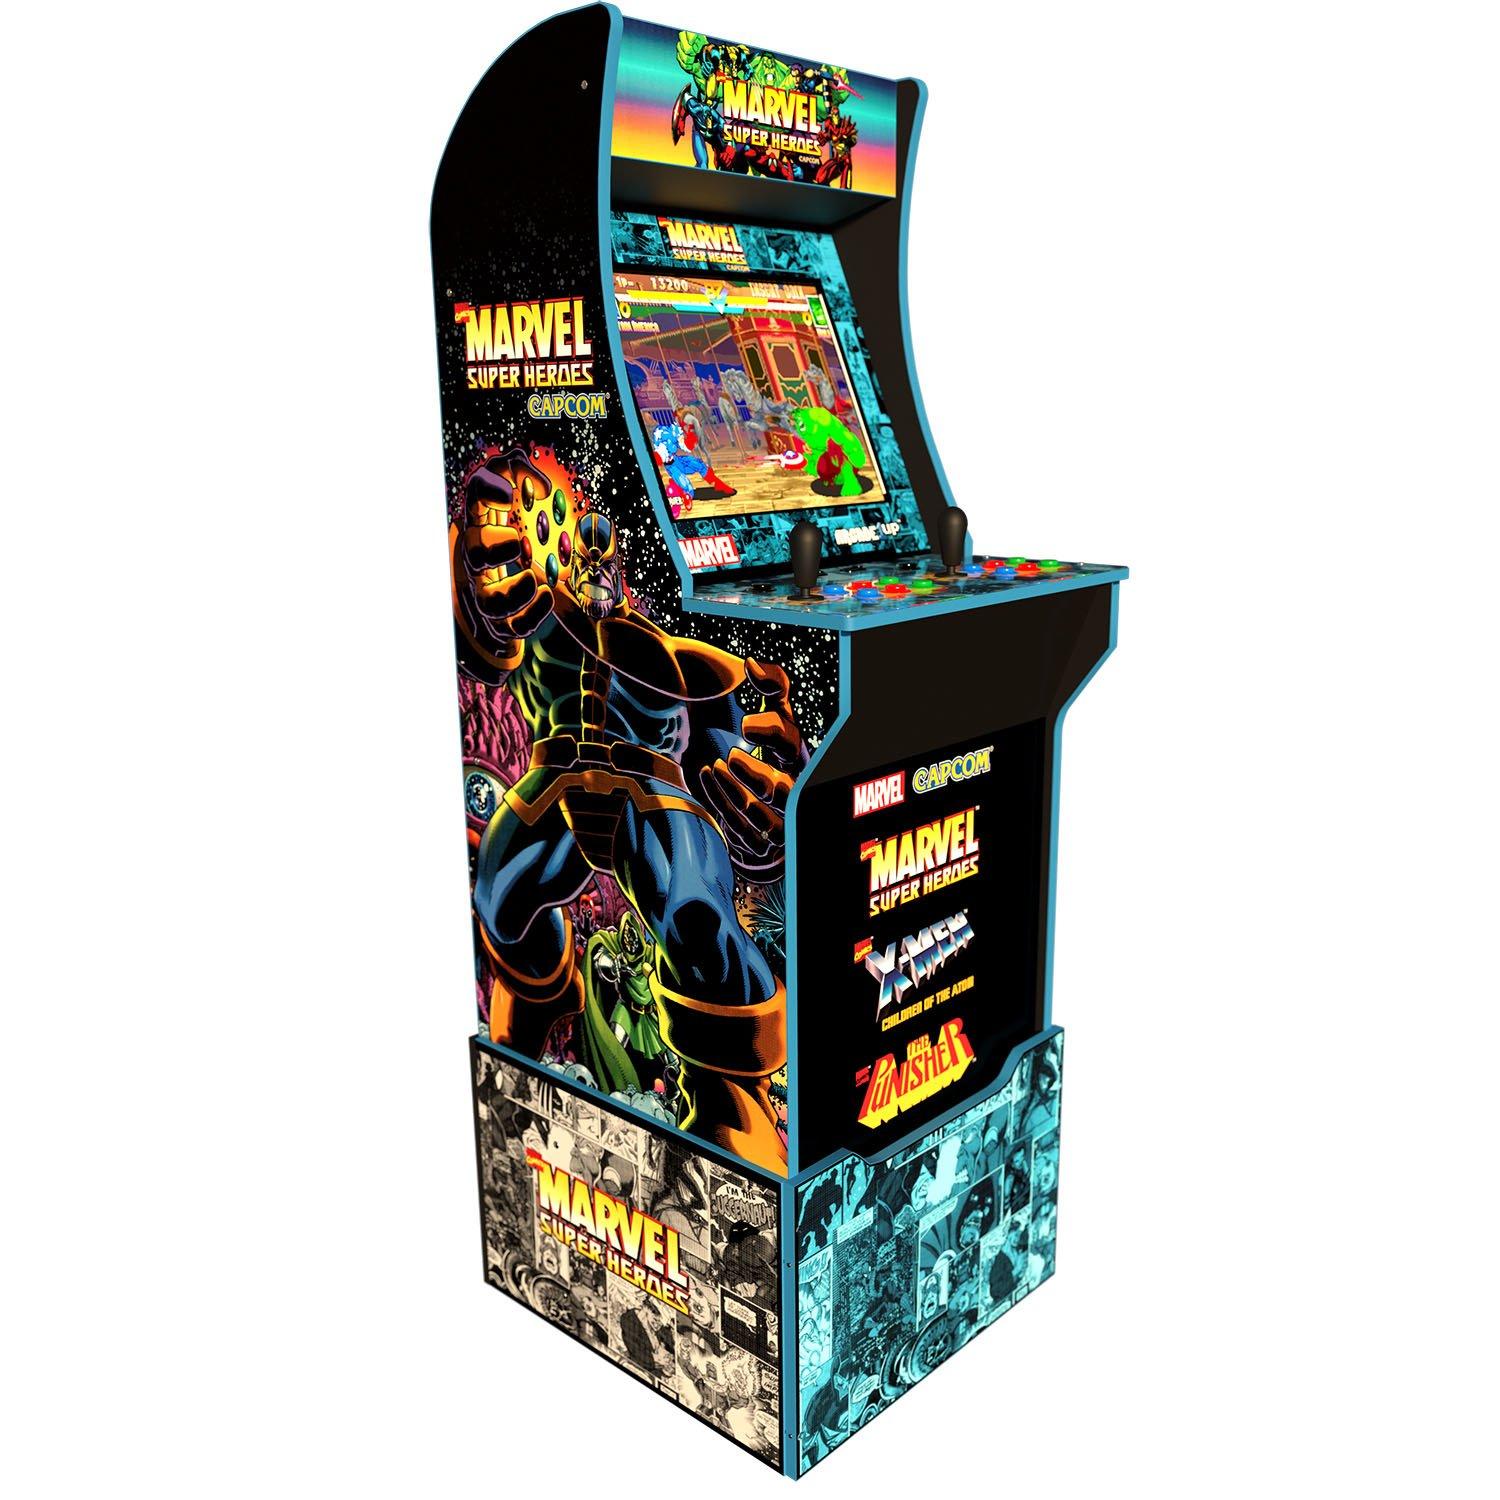 Marvel Super Heroes Arcade Cabinet With Riser Vintage Software